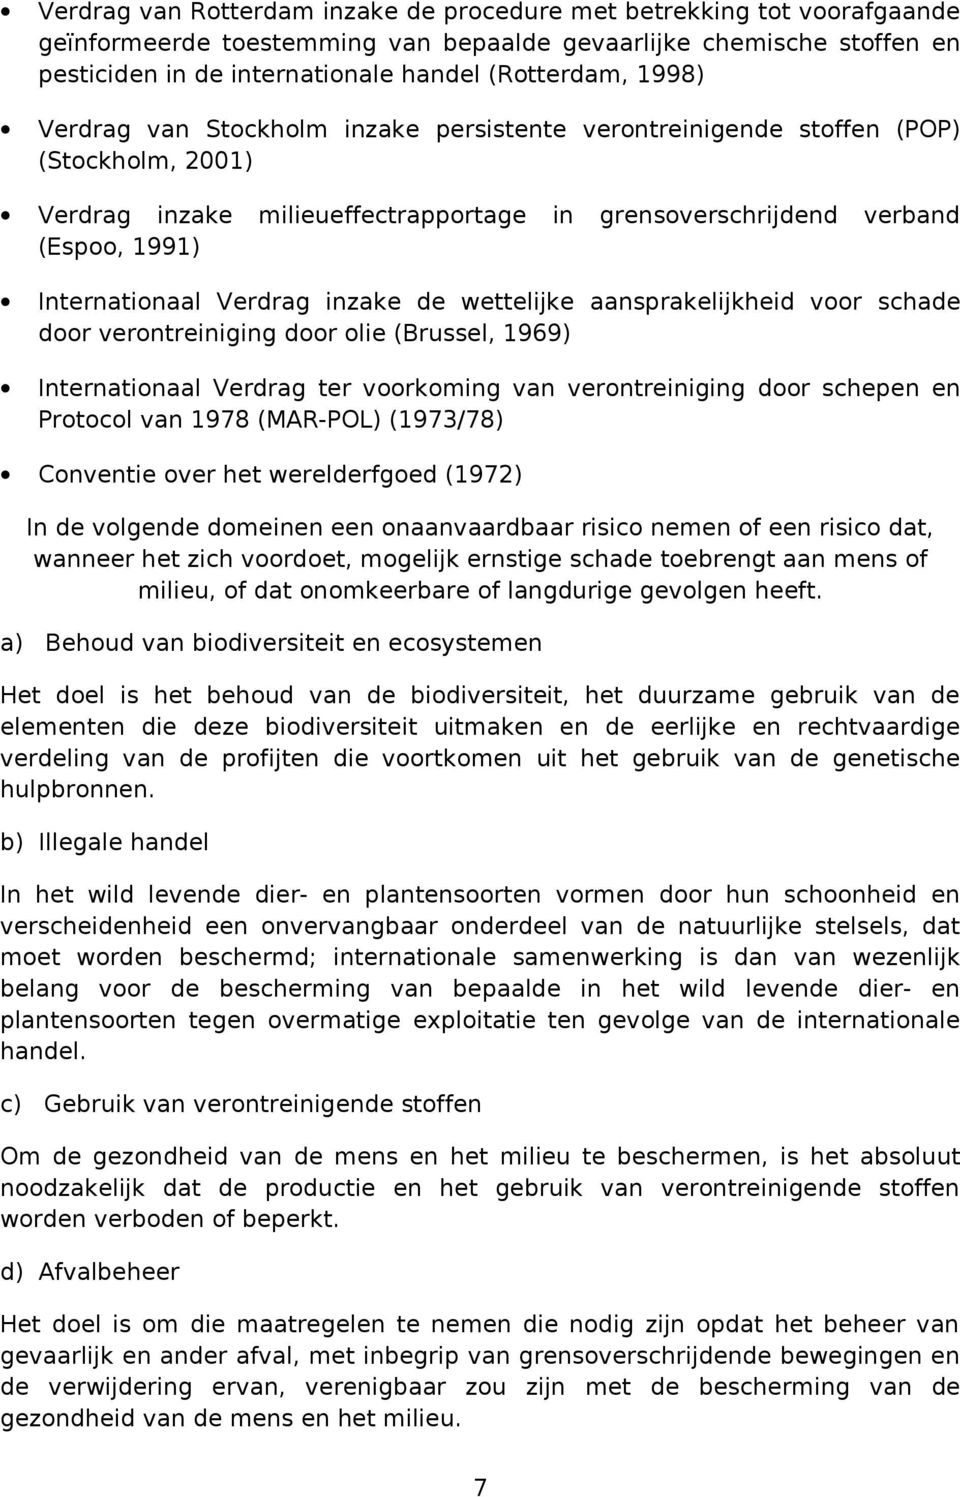 Verdrag inzake de wettelijke aansprakelijkheid voor schade door verontreiniging door olie (Brussel, 1969) Internationaal Verdrag ter voorkoming van verontreiniging door schepen en Protocol van 1978